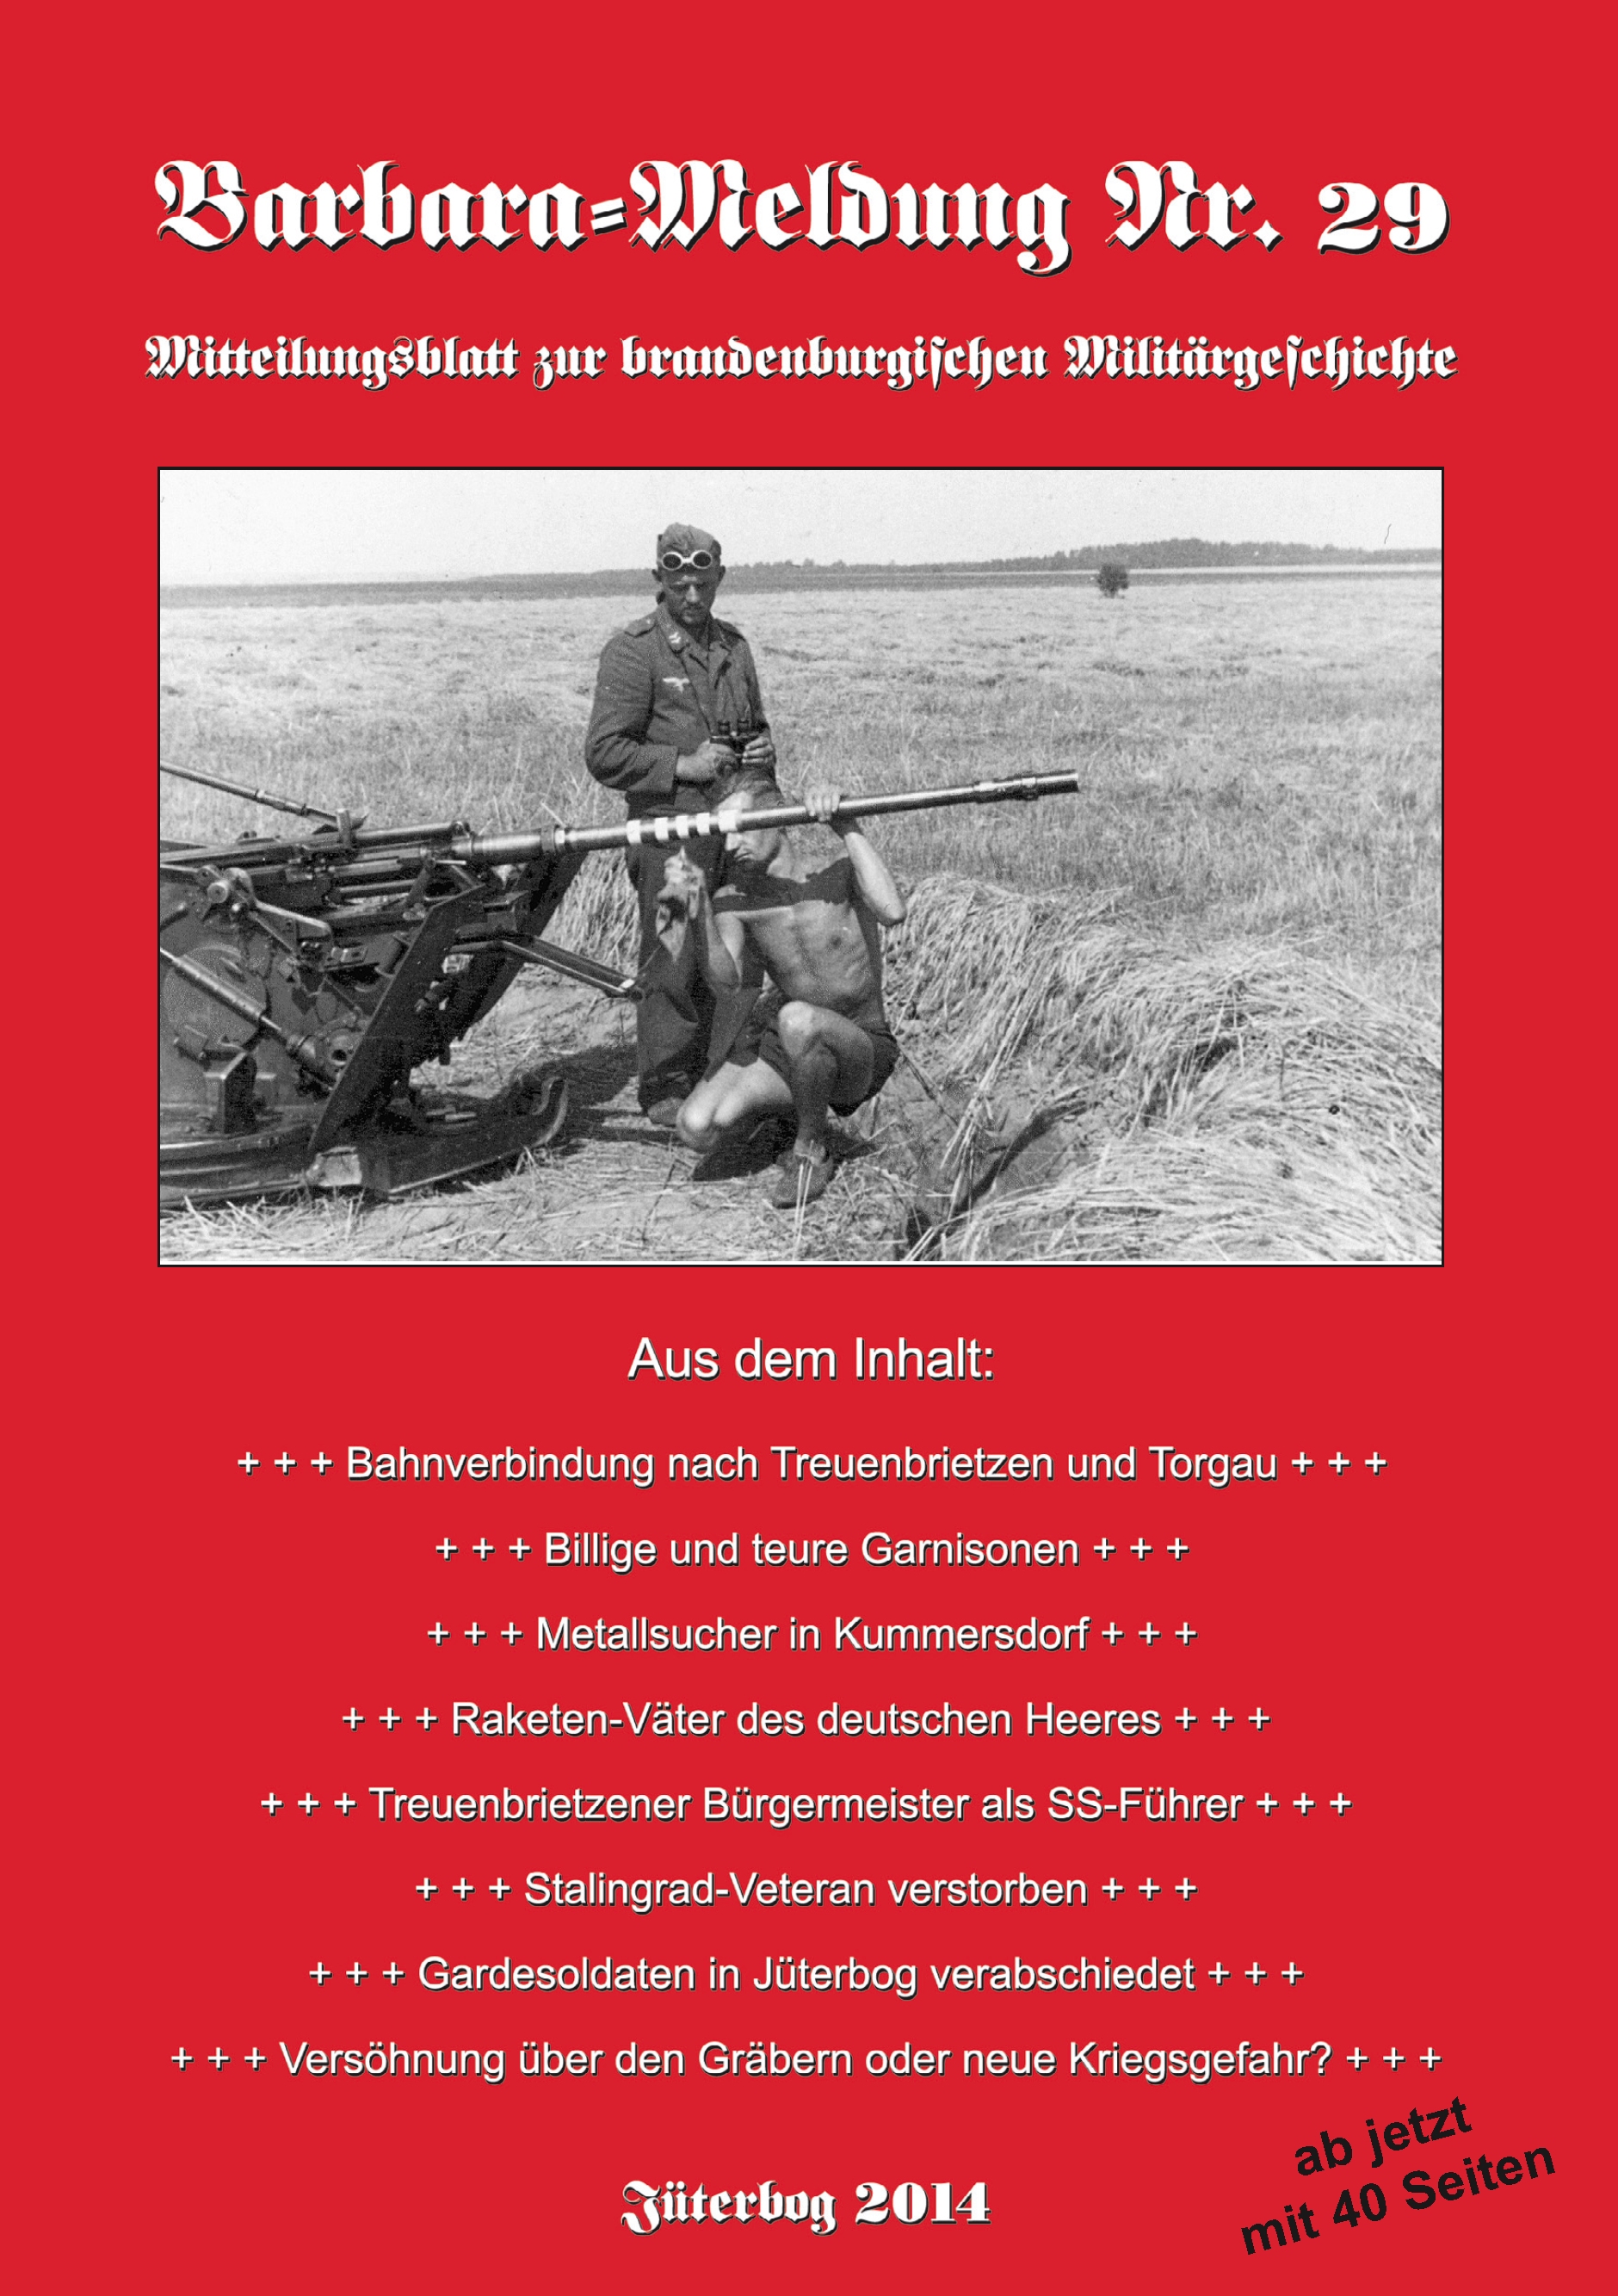 Barbara-Meldung Nr. 29. Mitteilungsblatt zur brandenburgischen Militärgeschichte.